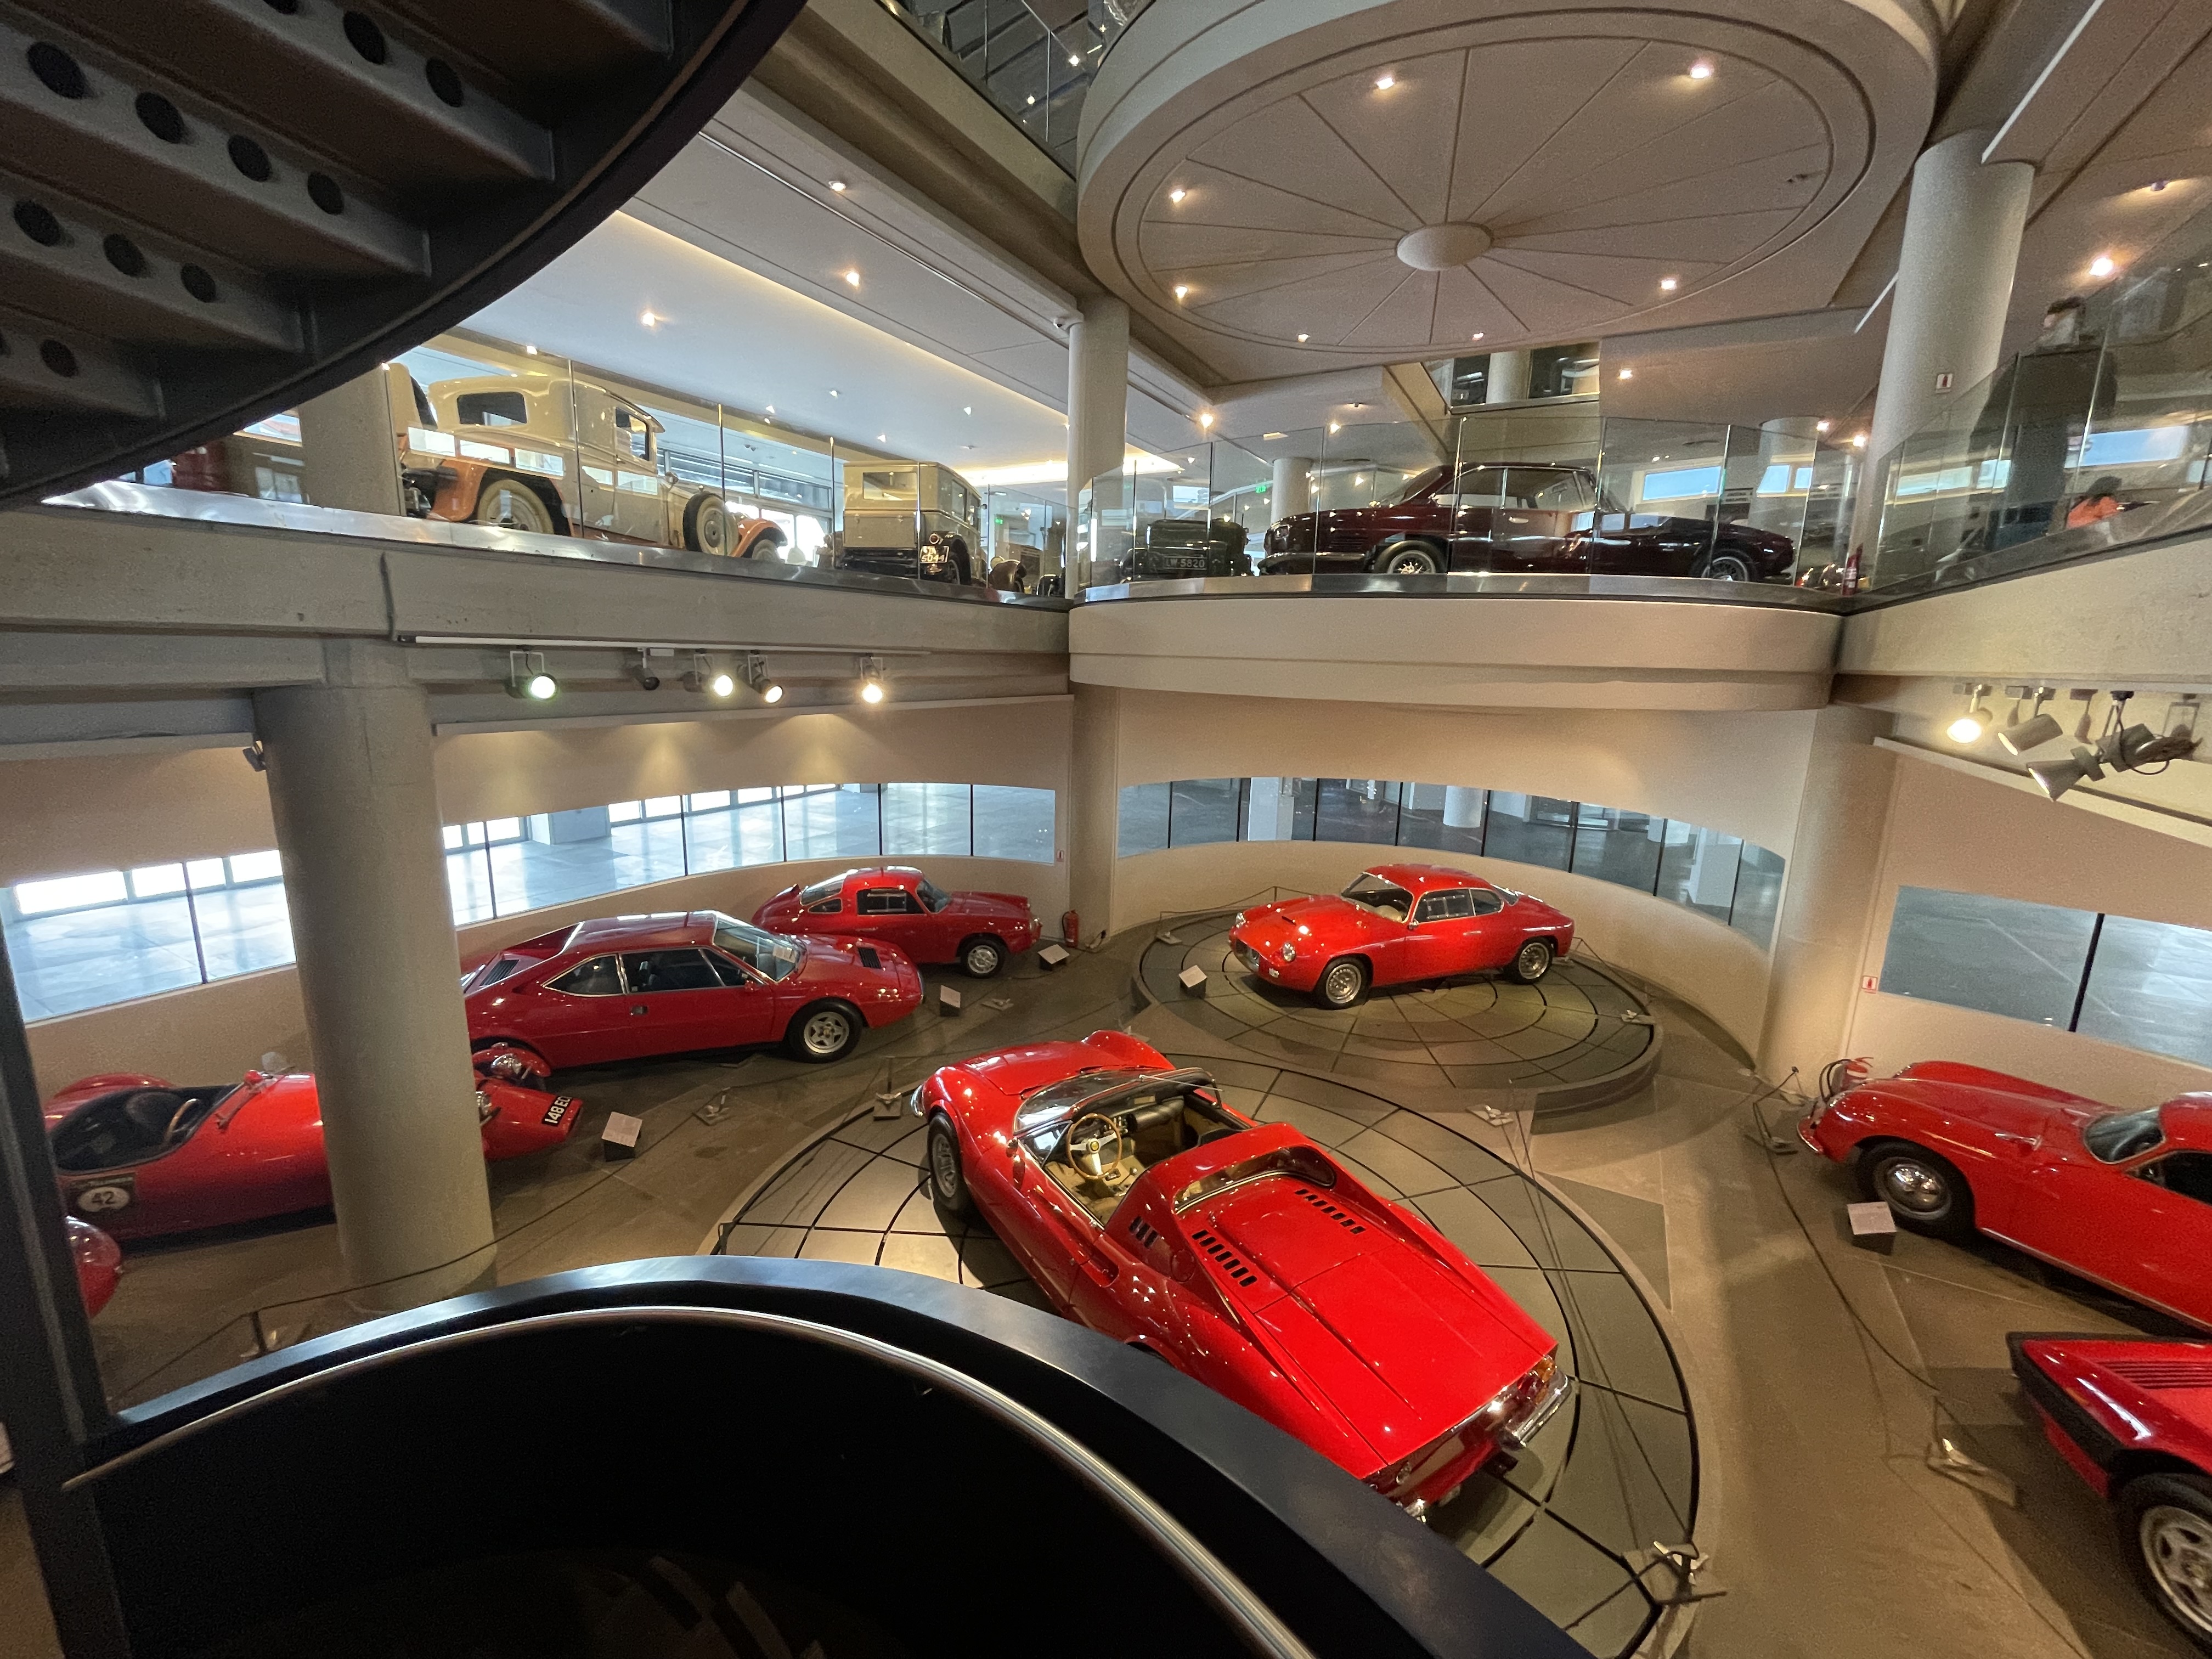 Στο Μουσείο Αυτοκινήτων θα βρεις τα πιο θρυλικά μοντέλα του παρελθόντος